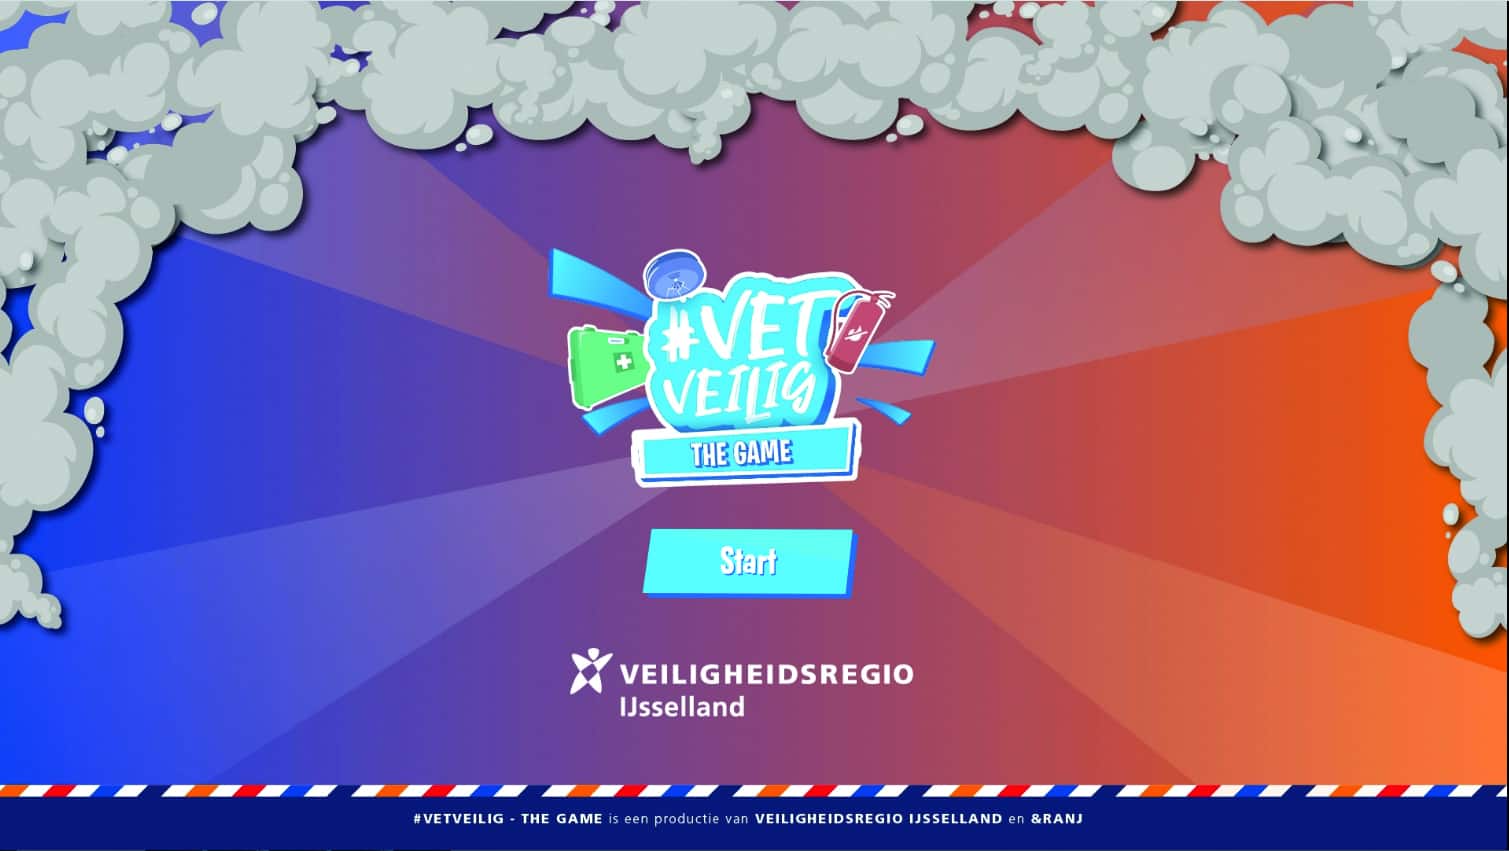 #VetVeilig the game